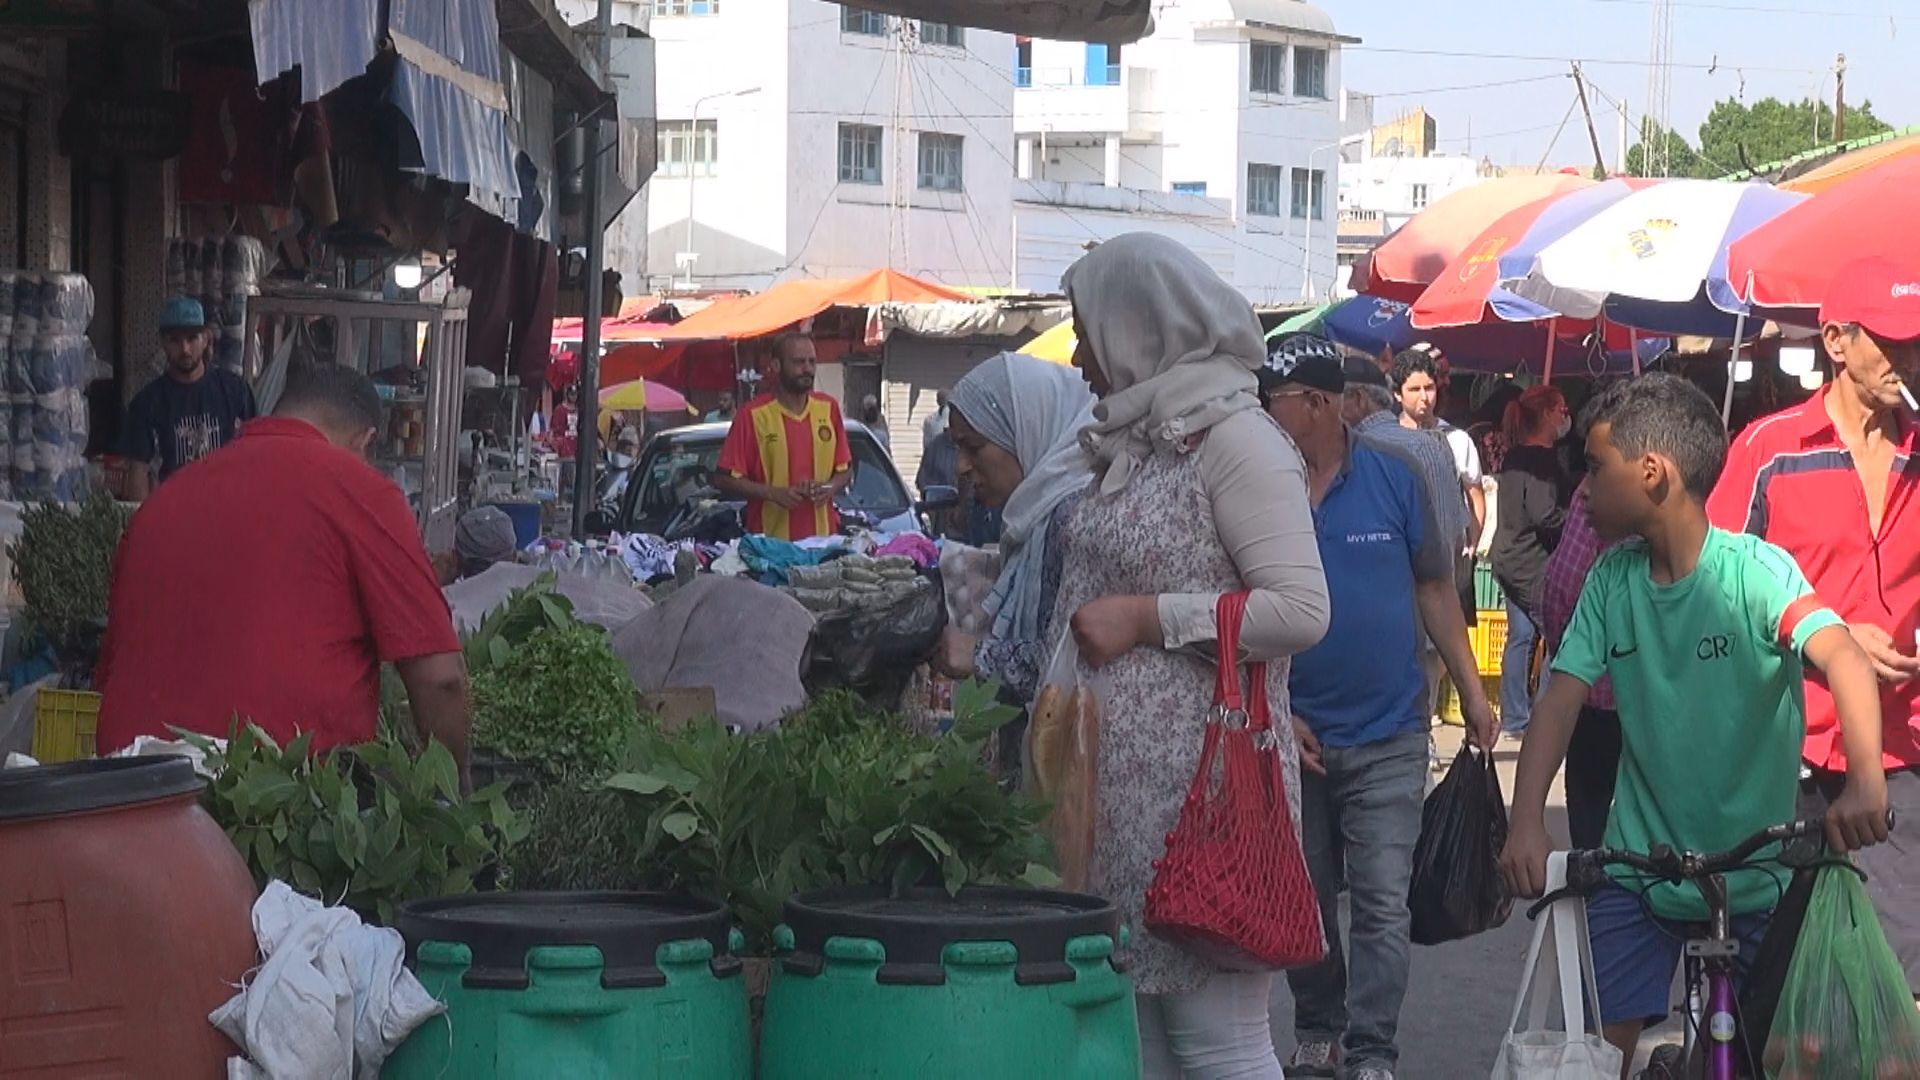 튀니지 시장의 모습